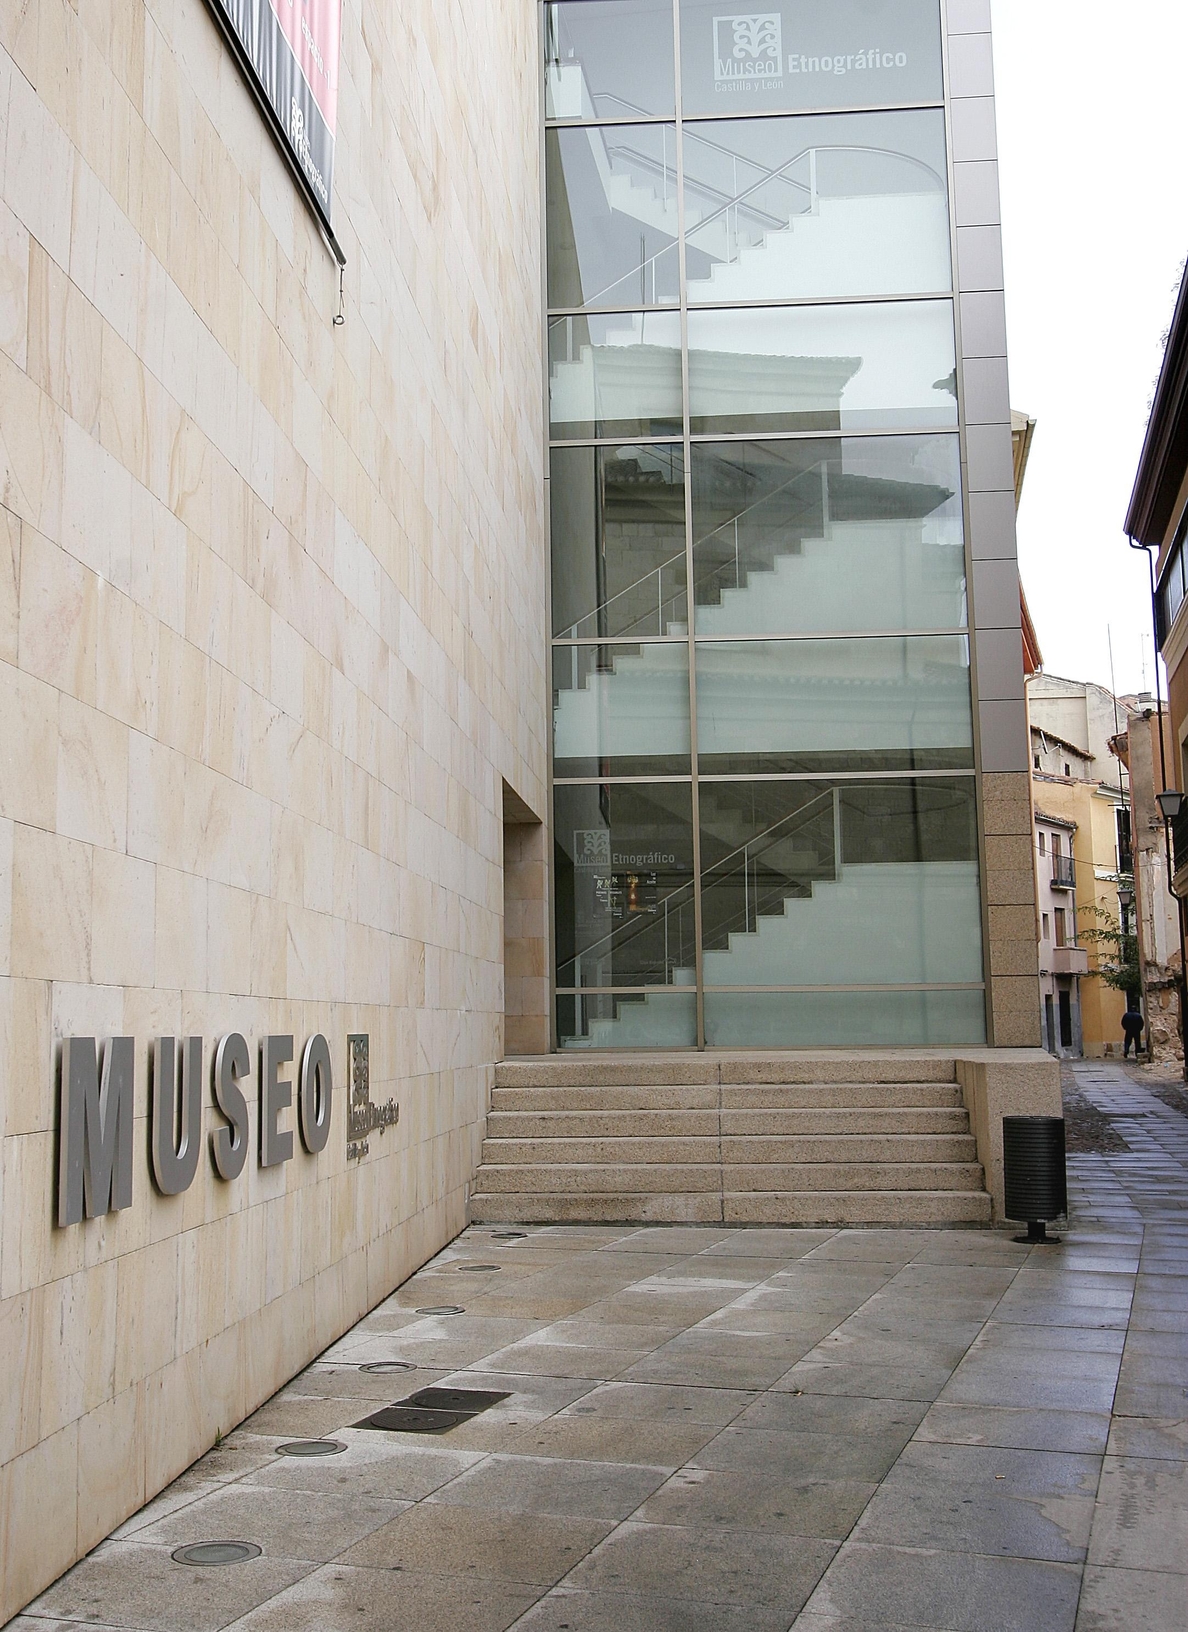 Los cuatro museos regionales sumaron más de 574.000 visitantes con incrementos de entre el 11 y el 49% respecto a 2013